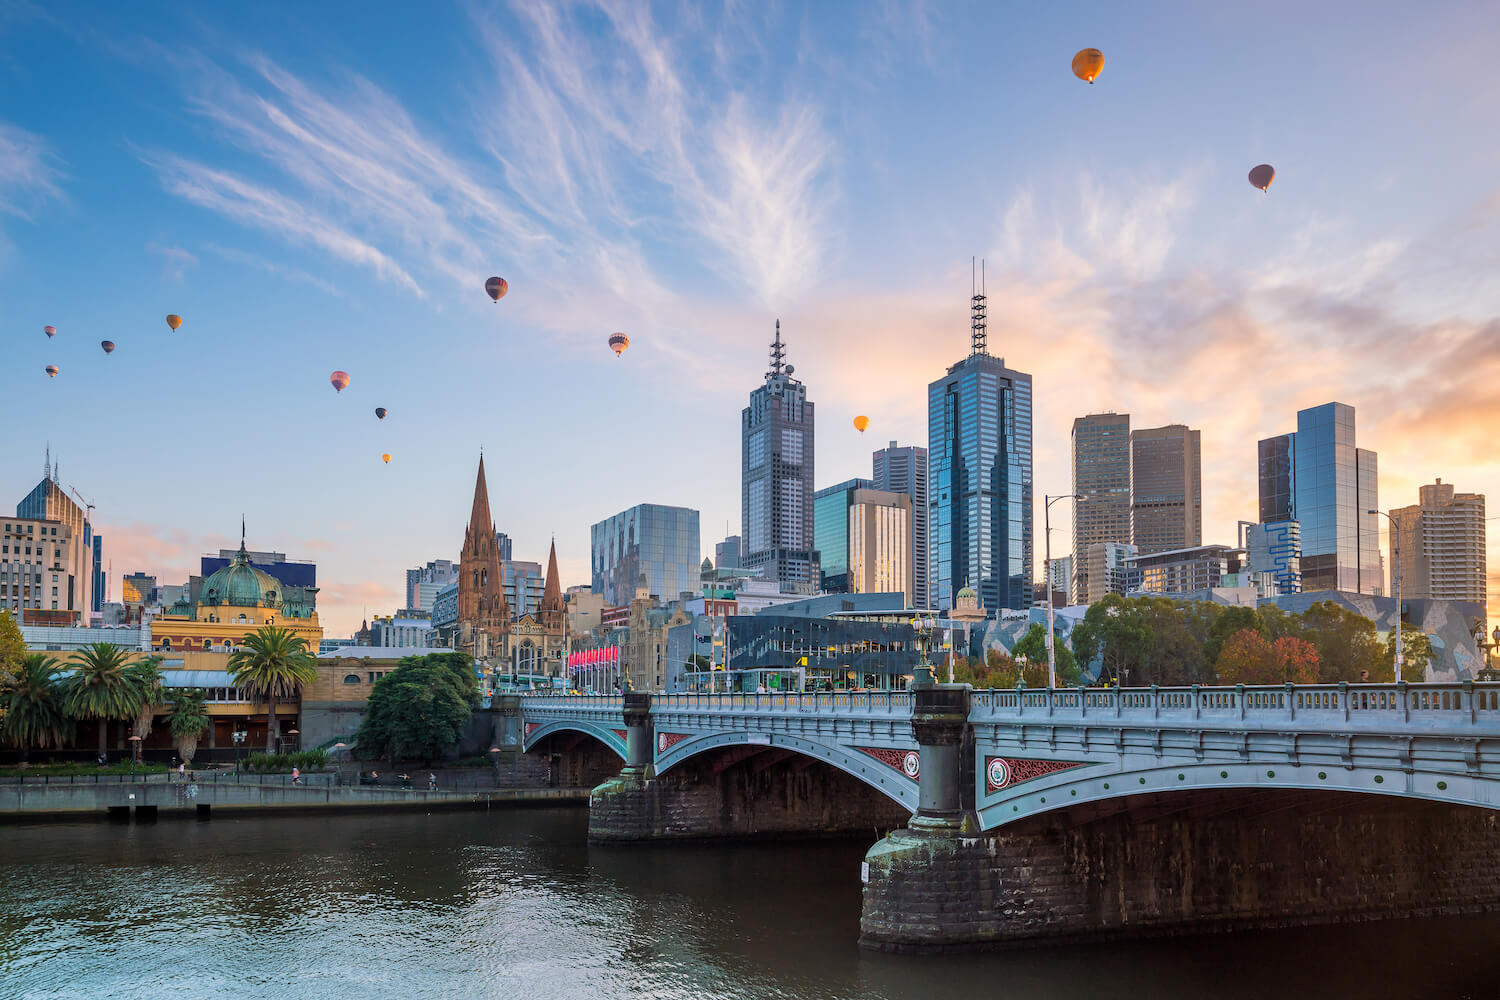 Kinh nghiệm du lịch Melbourne, Úc tự túc: Ăn gì, Ở đâu? | Vietjet Air